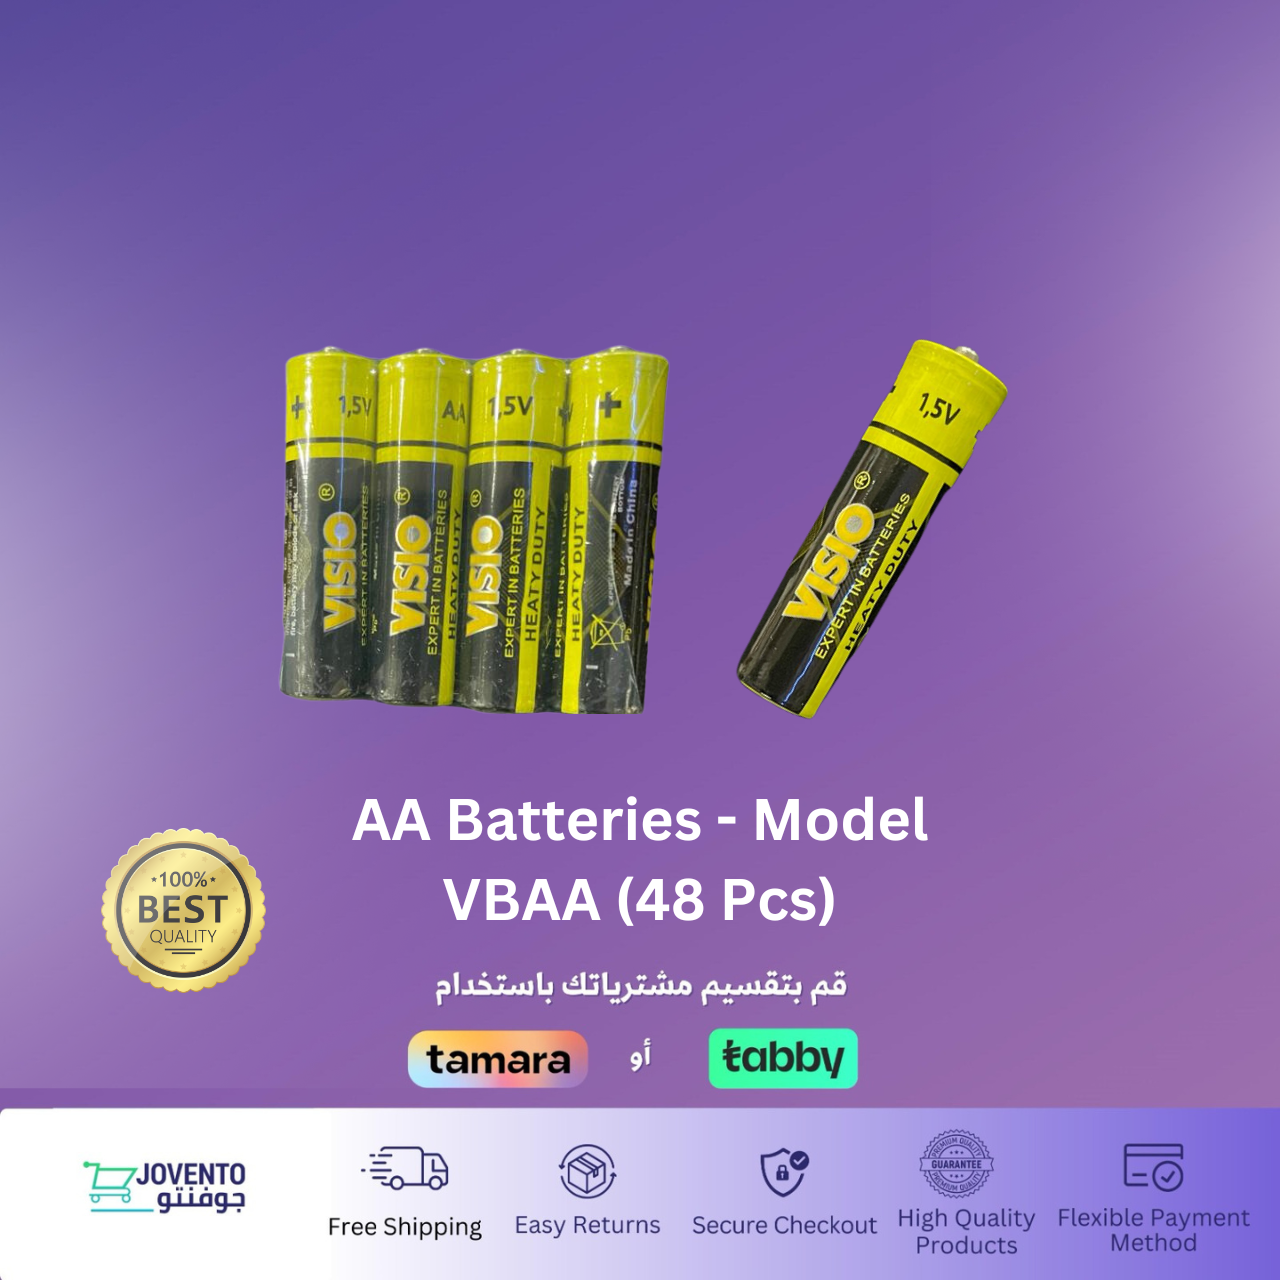 AA Batteries - Model VBAA (48 Pcs)